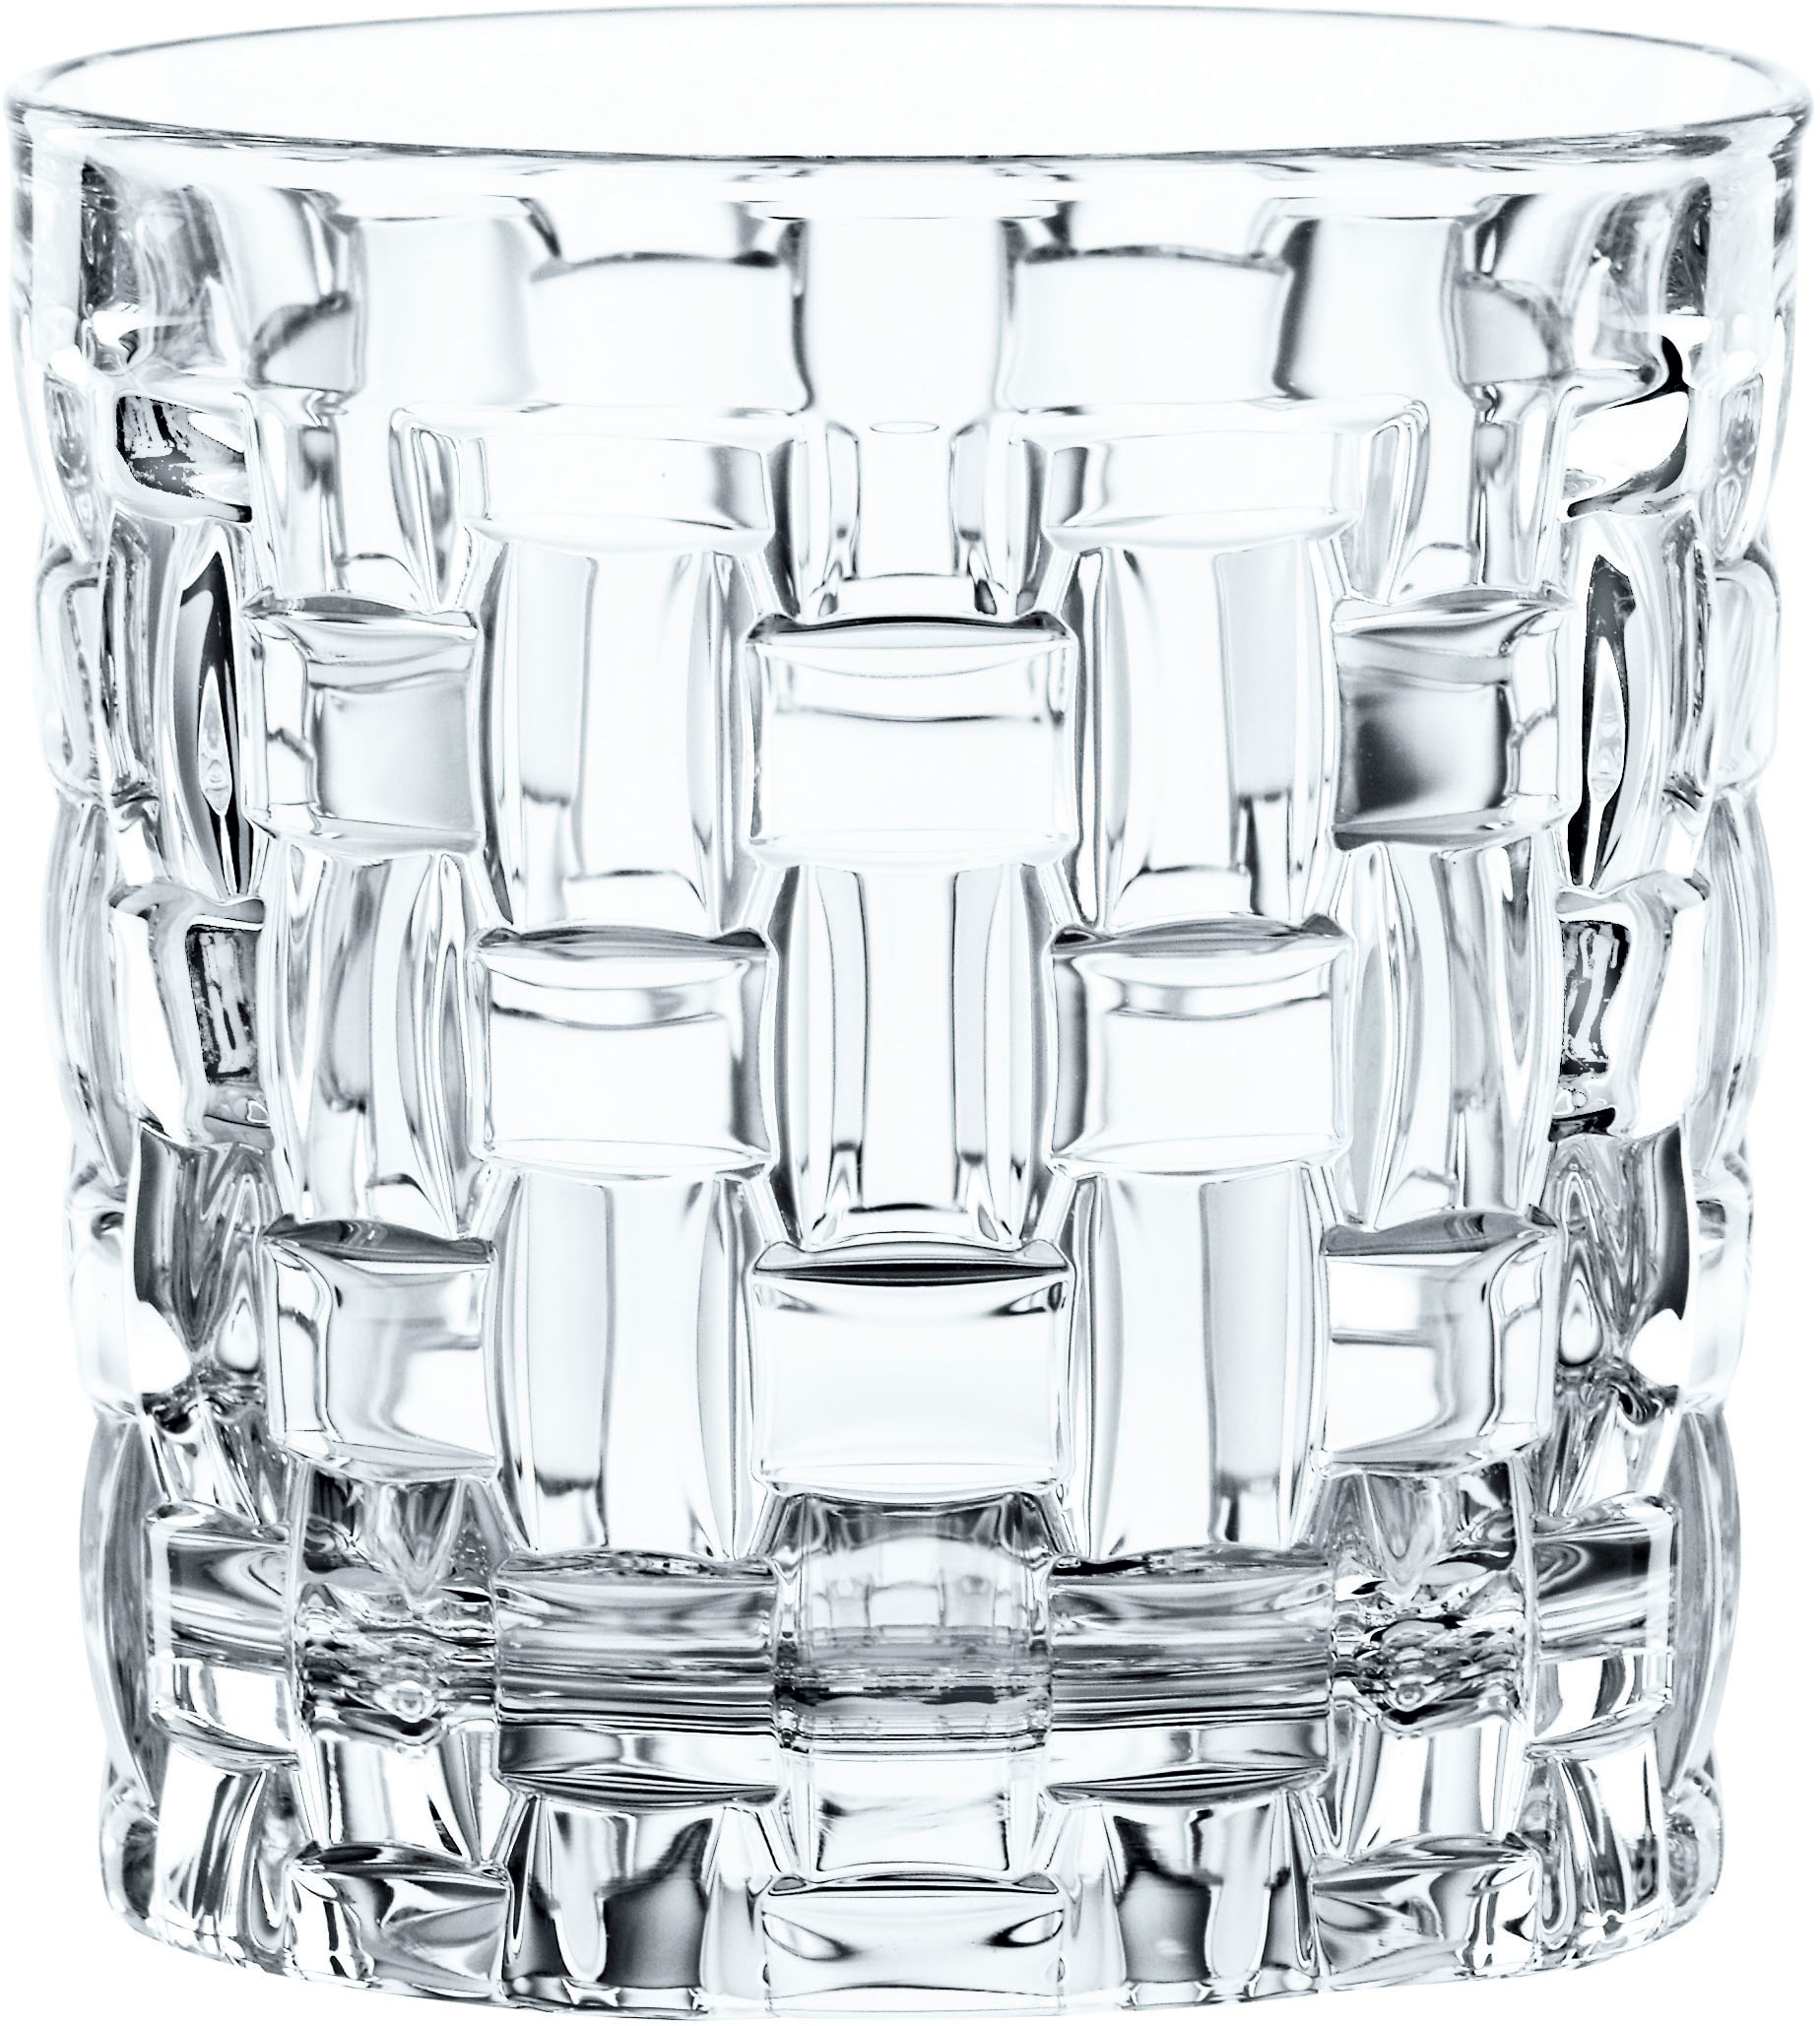 Nachtmann Gläser-Set »Bossa Nova«, (Set, 18 tlg., je 6 Whiskygläser, Longdrinkgläser und Softdrink/Wasser-Gläser), Made in Germany, 18-teilig